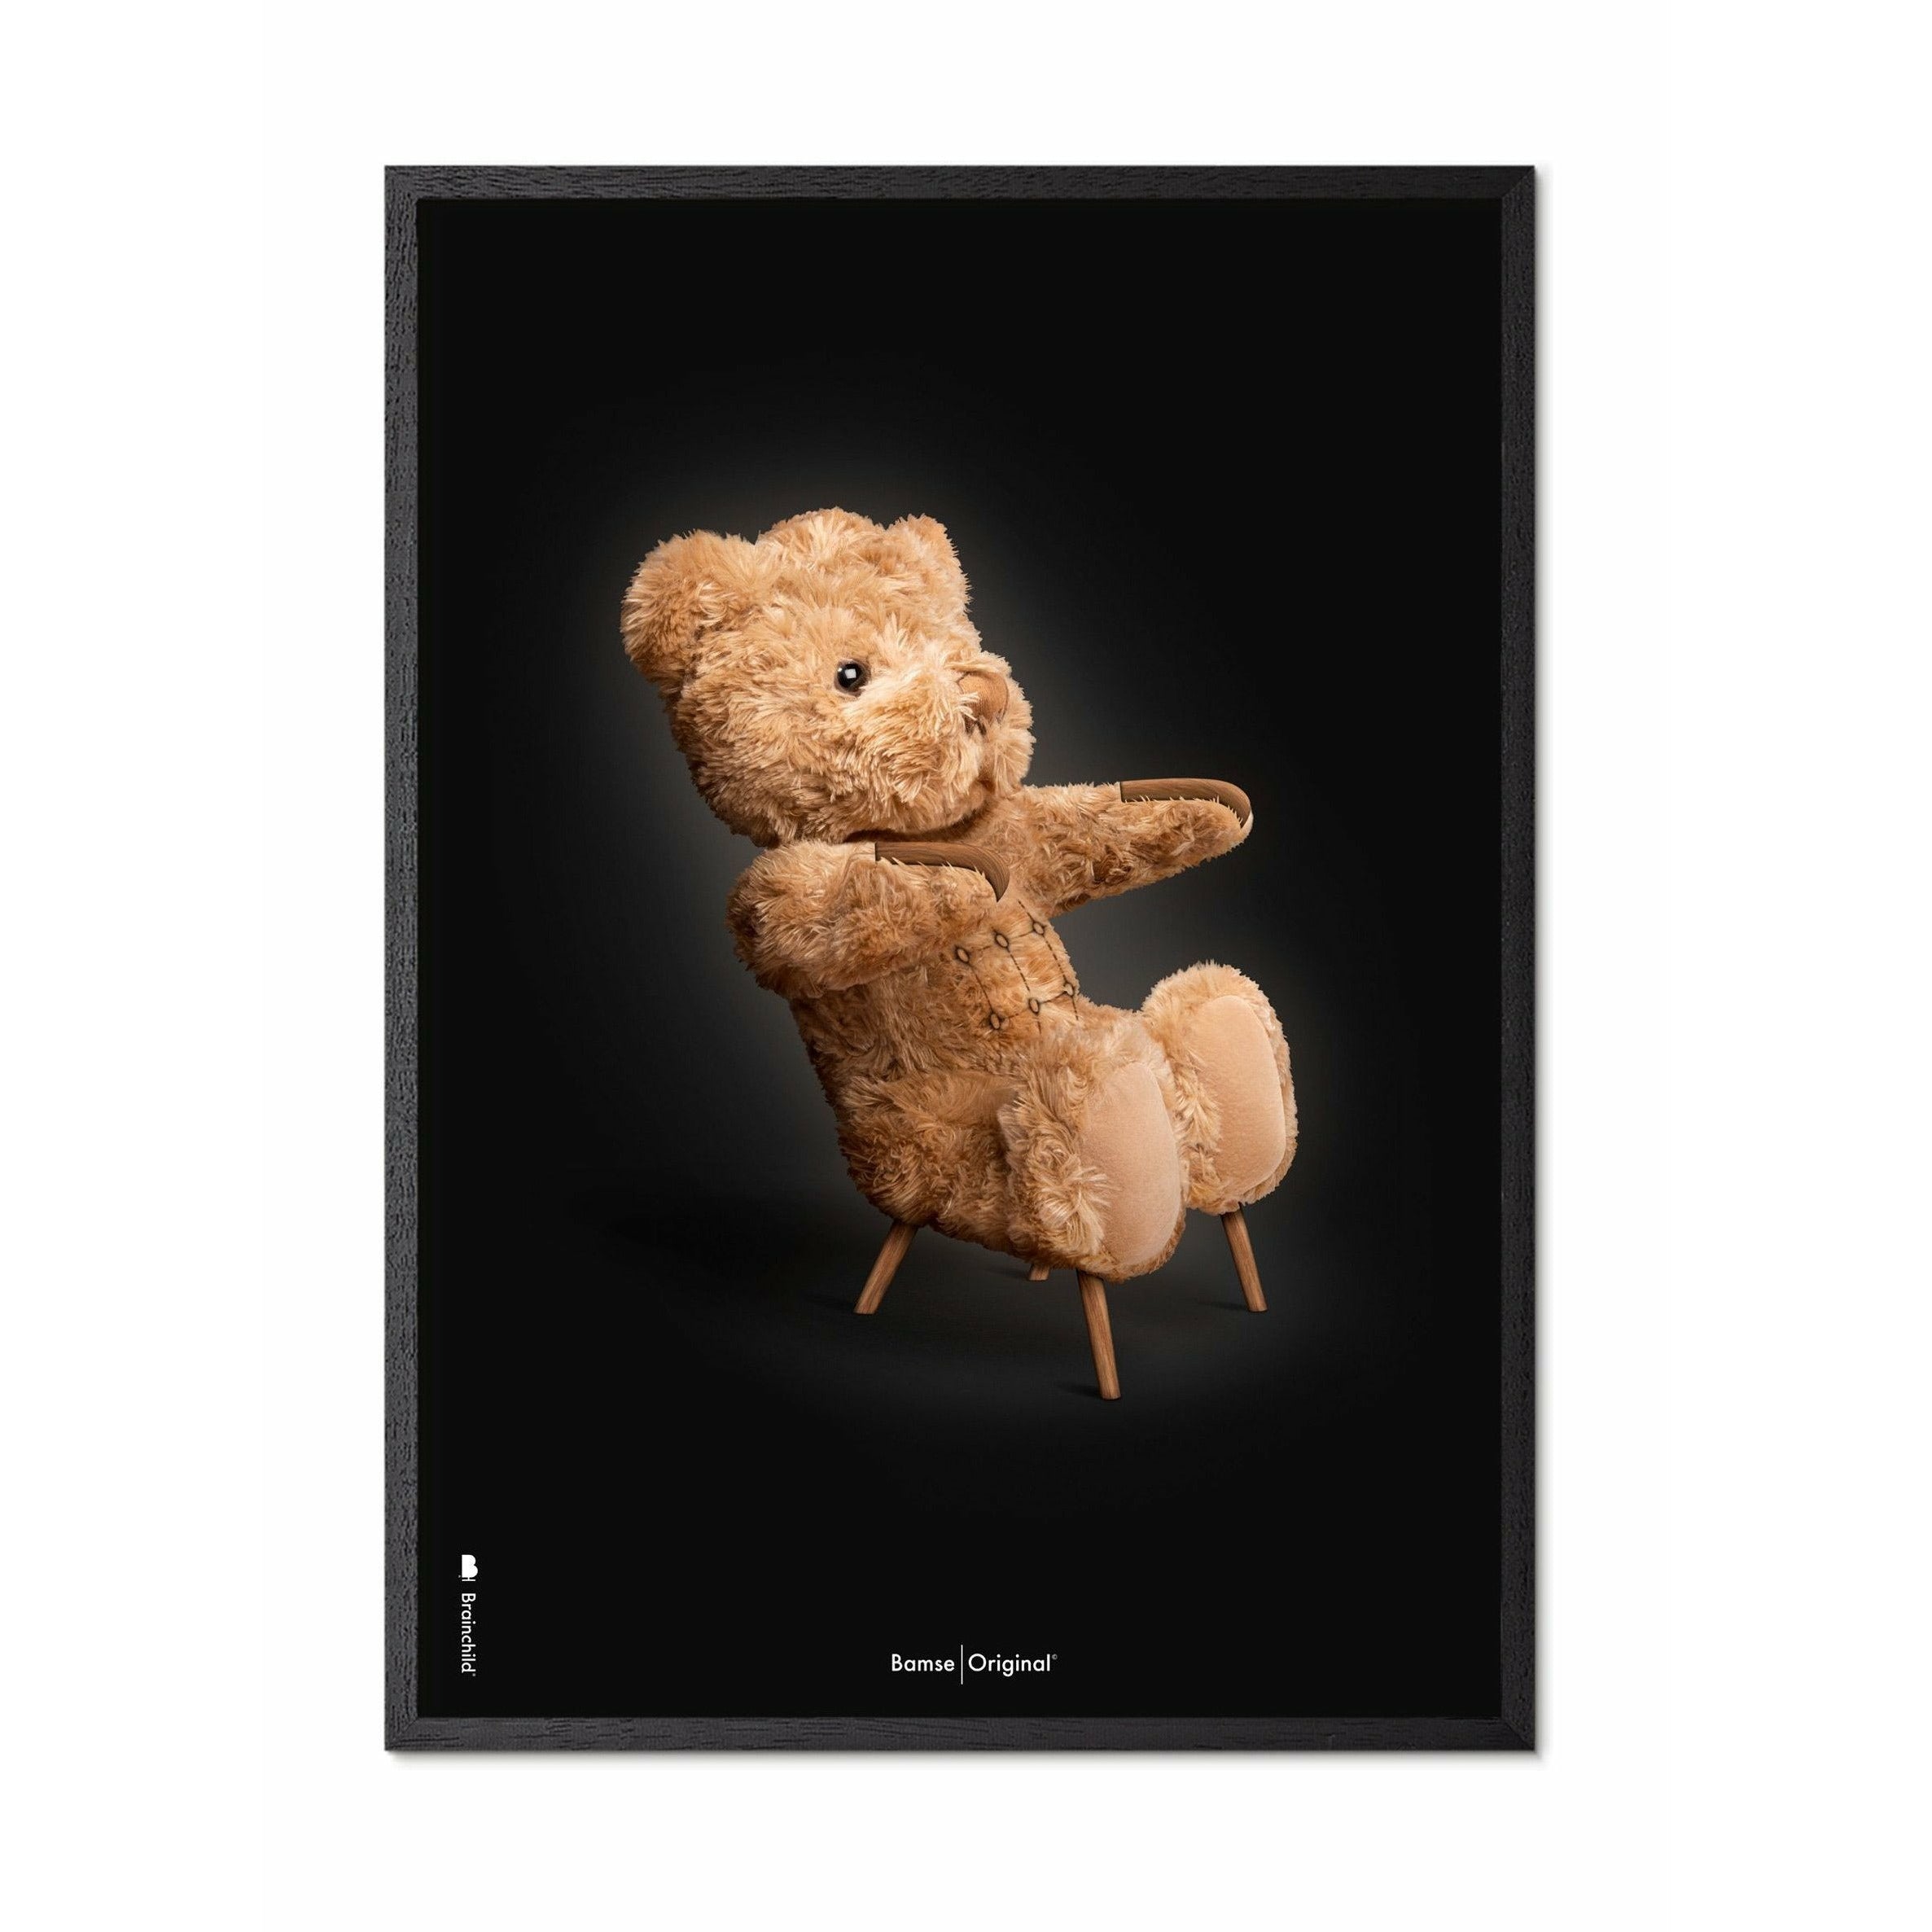 Brainchild Teddybär Classic Poster, Rahmen aus schwarz lackiertem Holz 30x40 cm, schwarzer Hintergrund